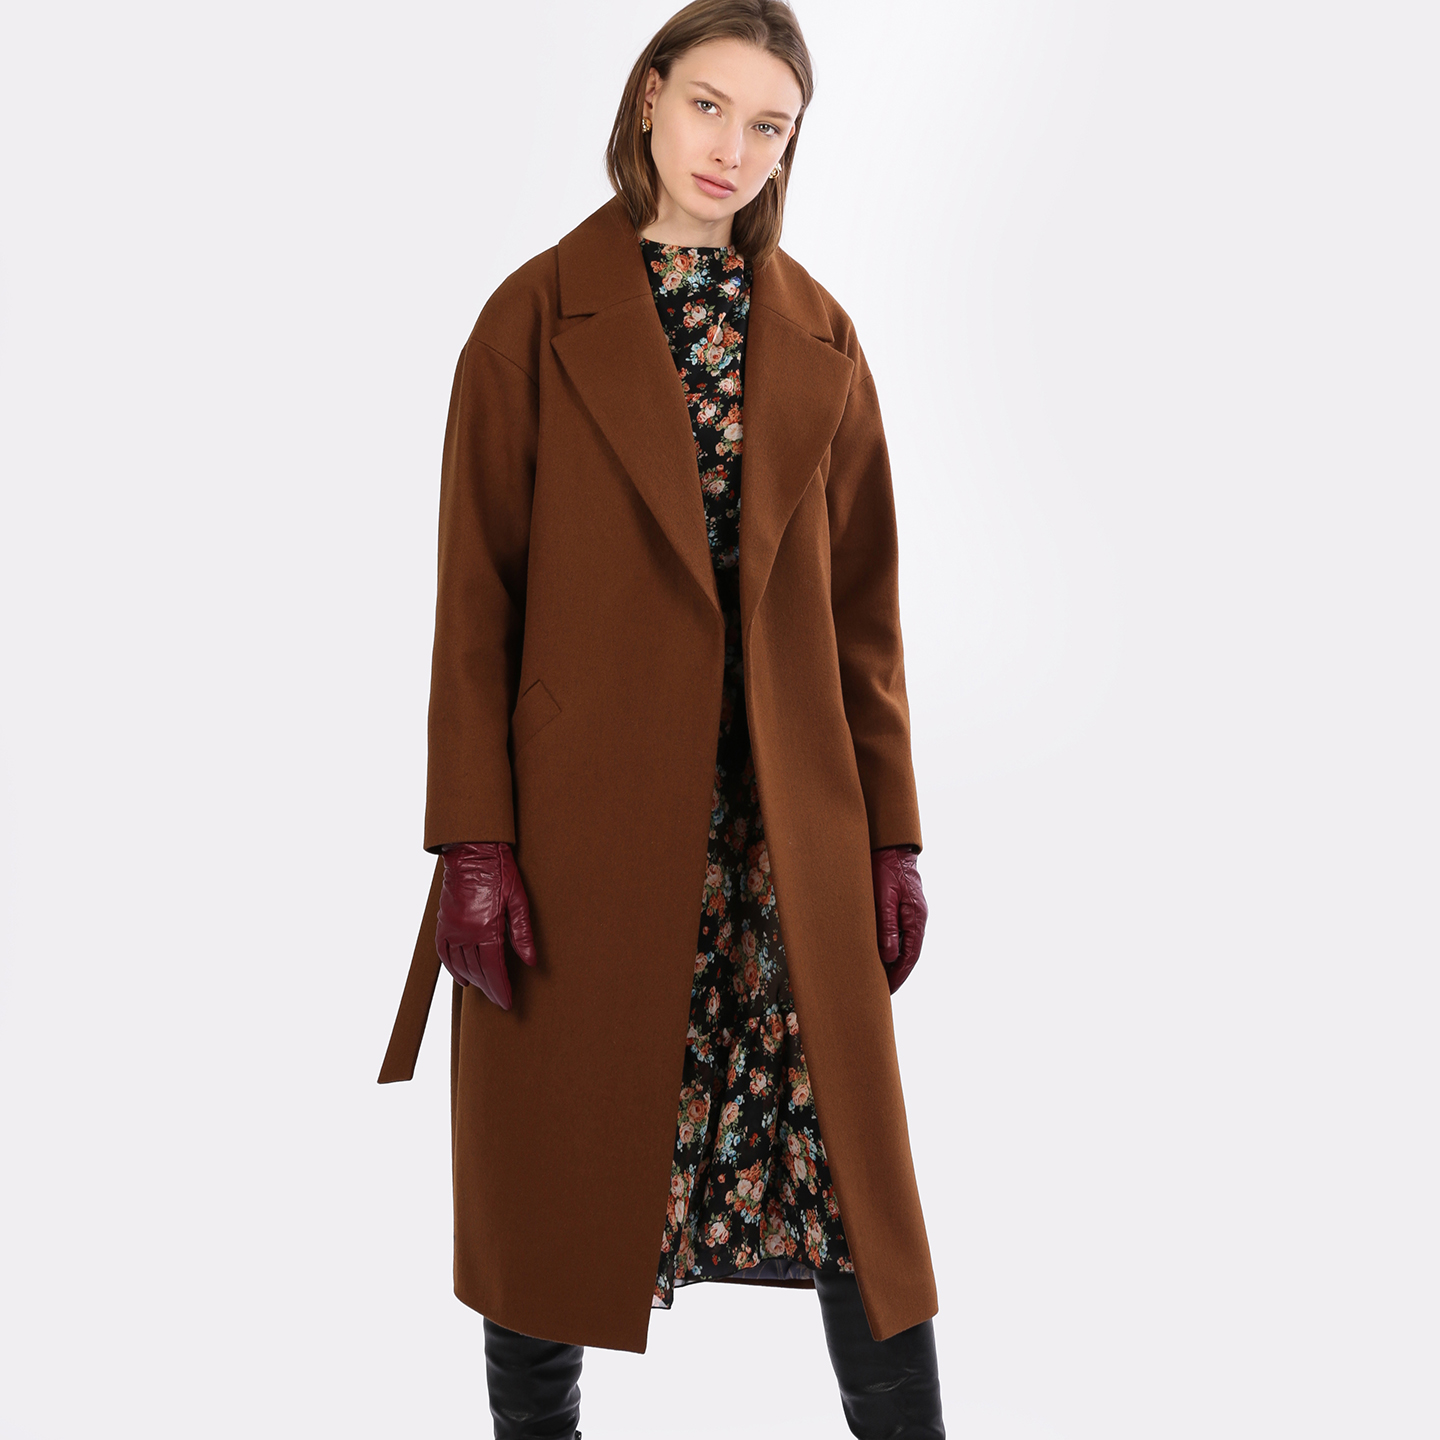 Купить коричневое пальто. Коричневое пальто. Пальто темно коричневое женское. Коричневое пальто женское. Пальто коричневого цвета.